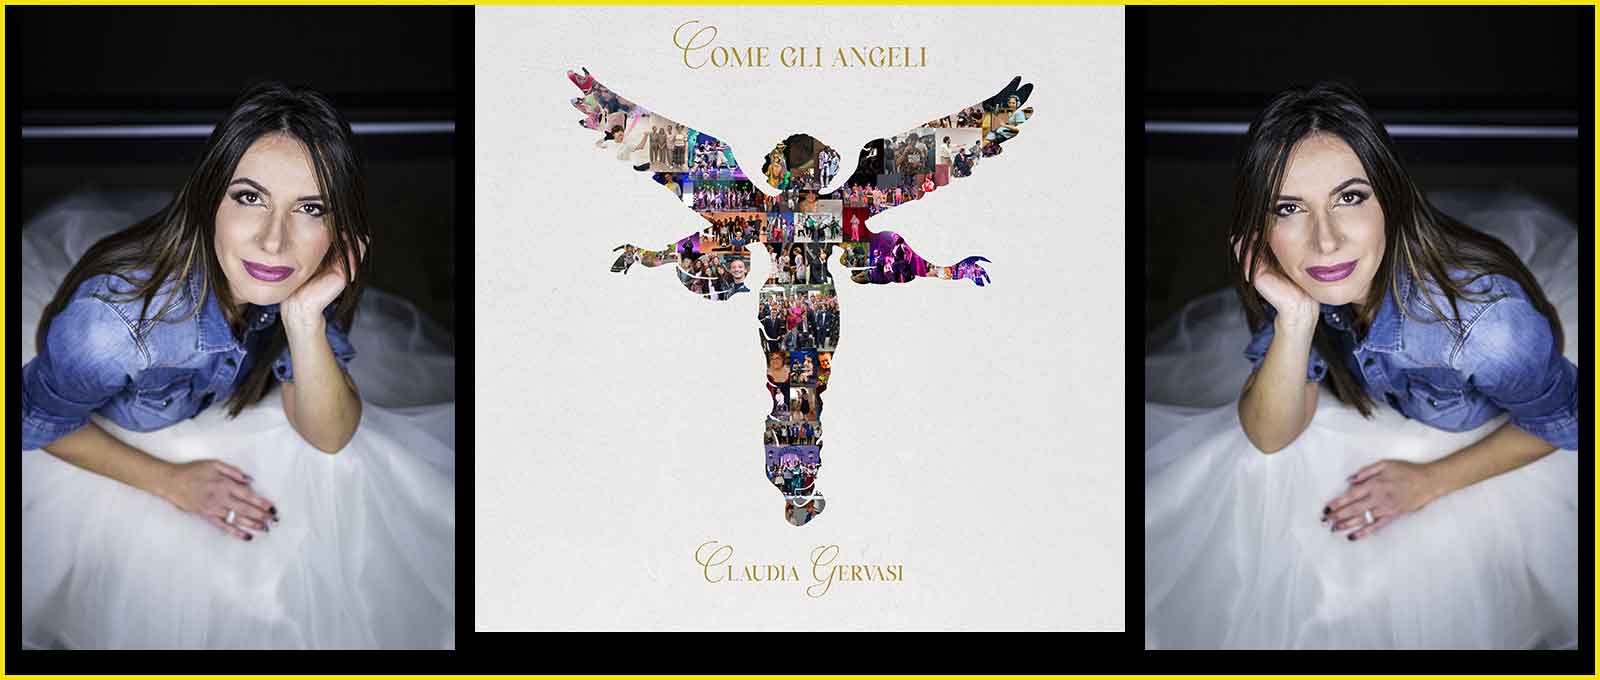 Claudia Gervasi “Come gli Angeli”.